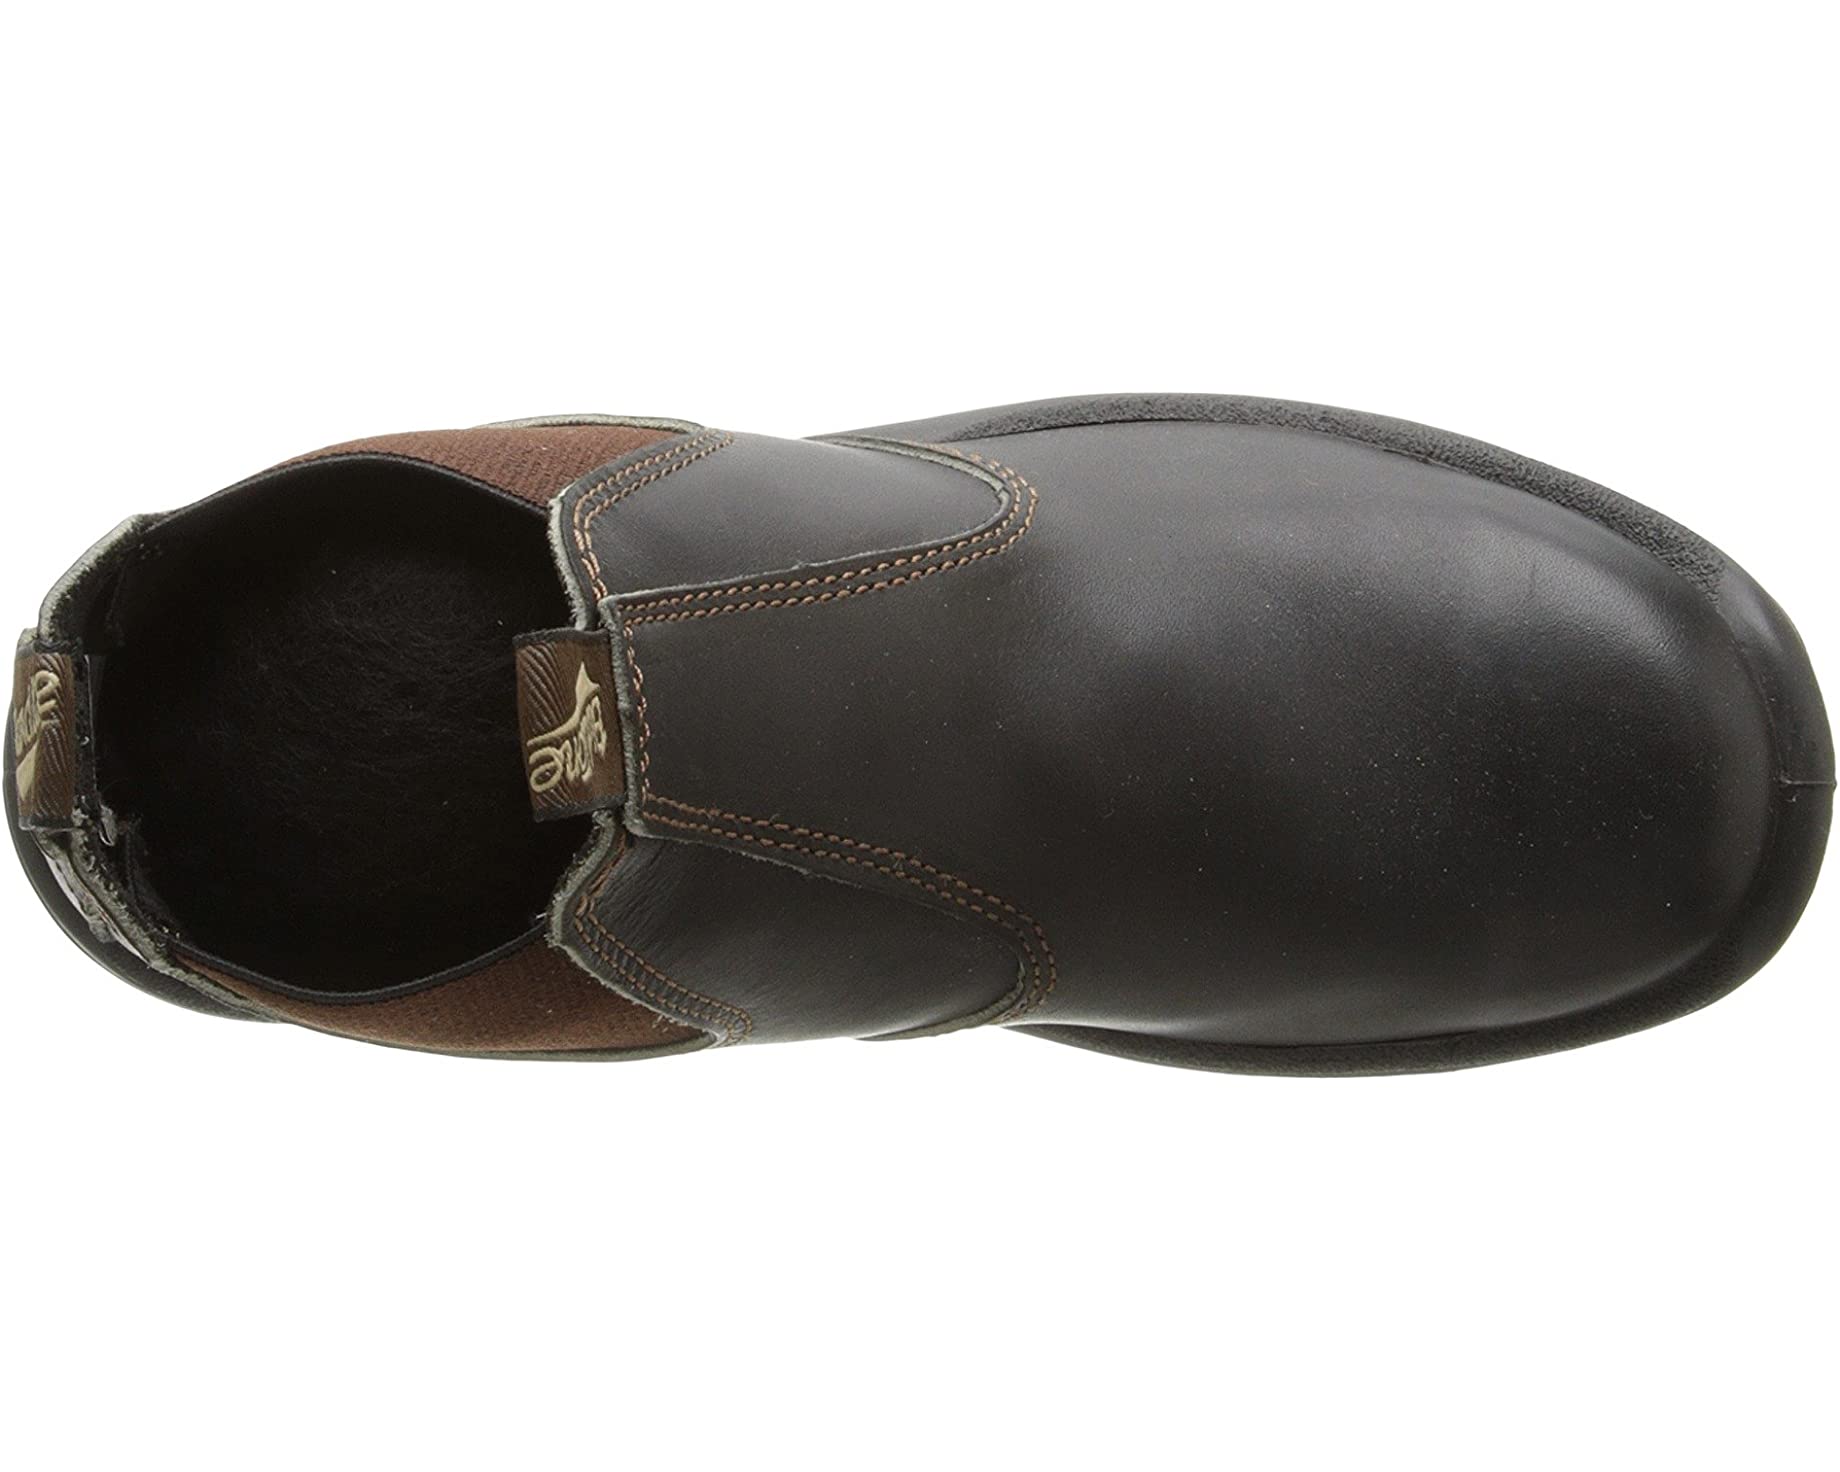 Ботинки BL490 Work Chelsea Boot Blundstone, коричневый цена и фото